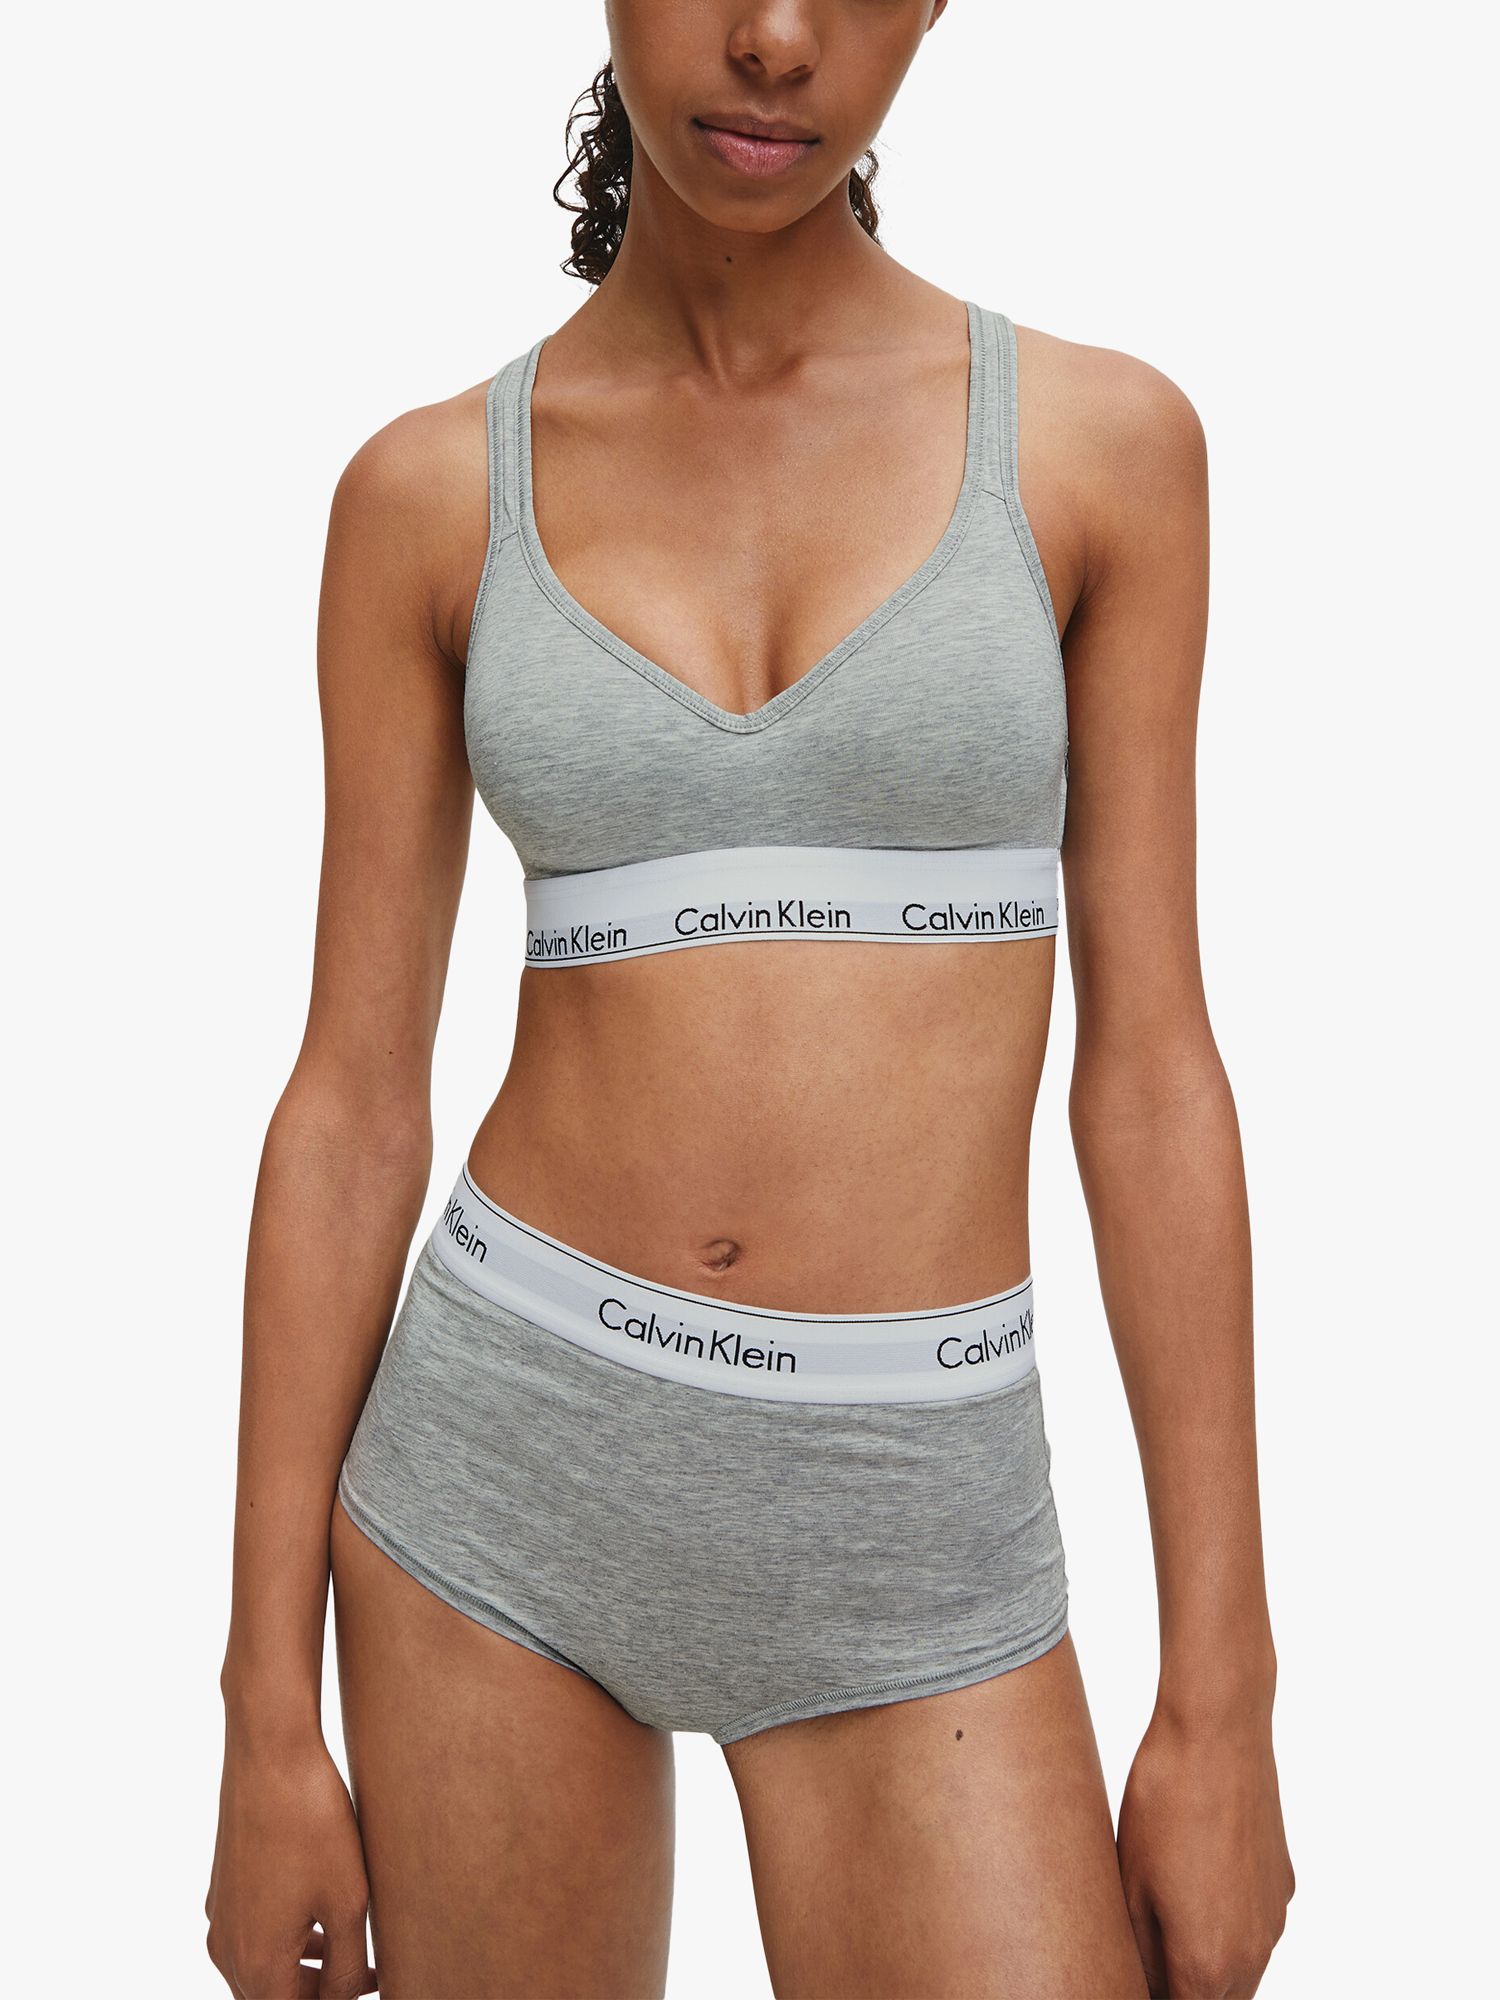 Calvin Klein Women's String Bralette - CK One, Grey Heather, Size